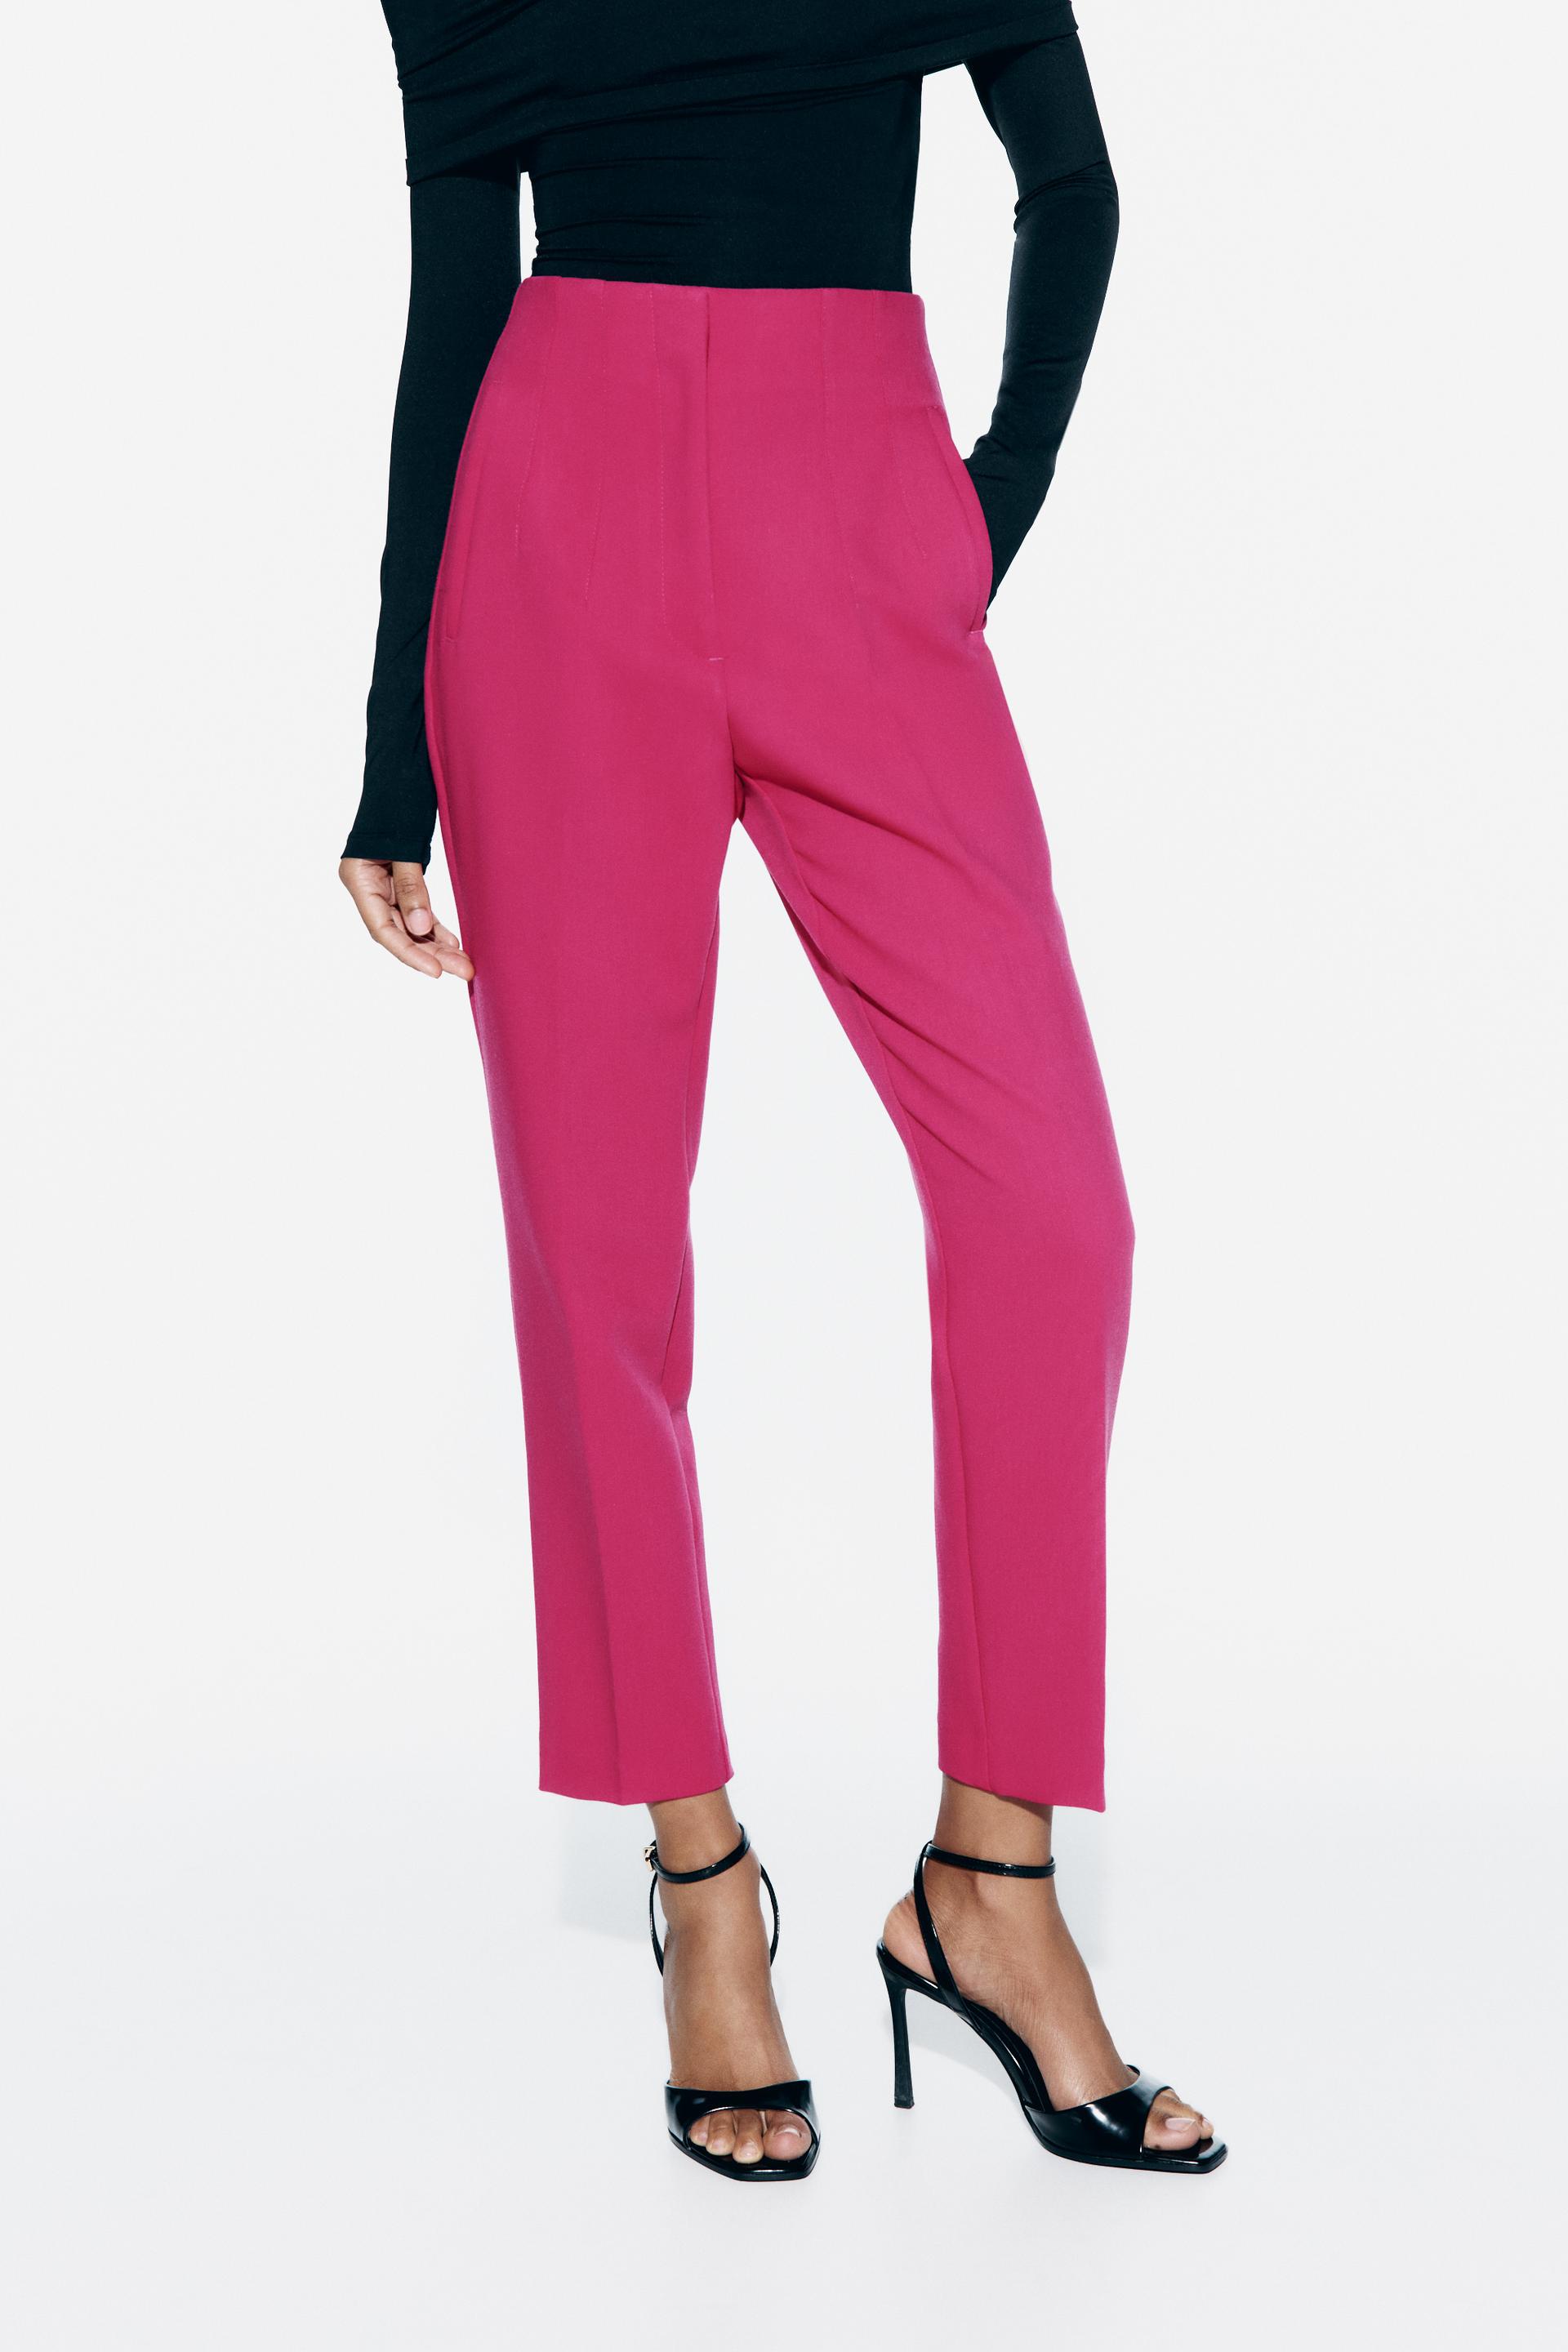 Zara Girls Hot Pink Pants